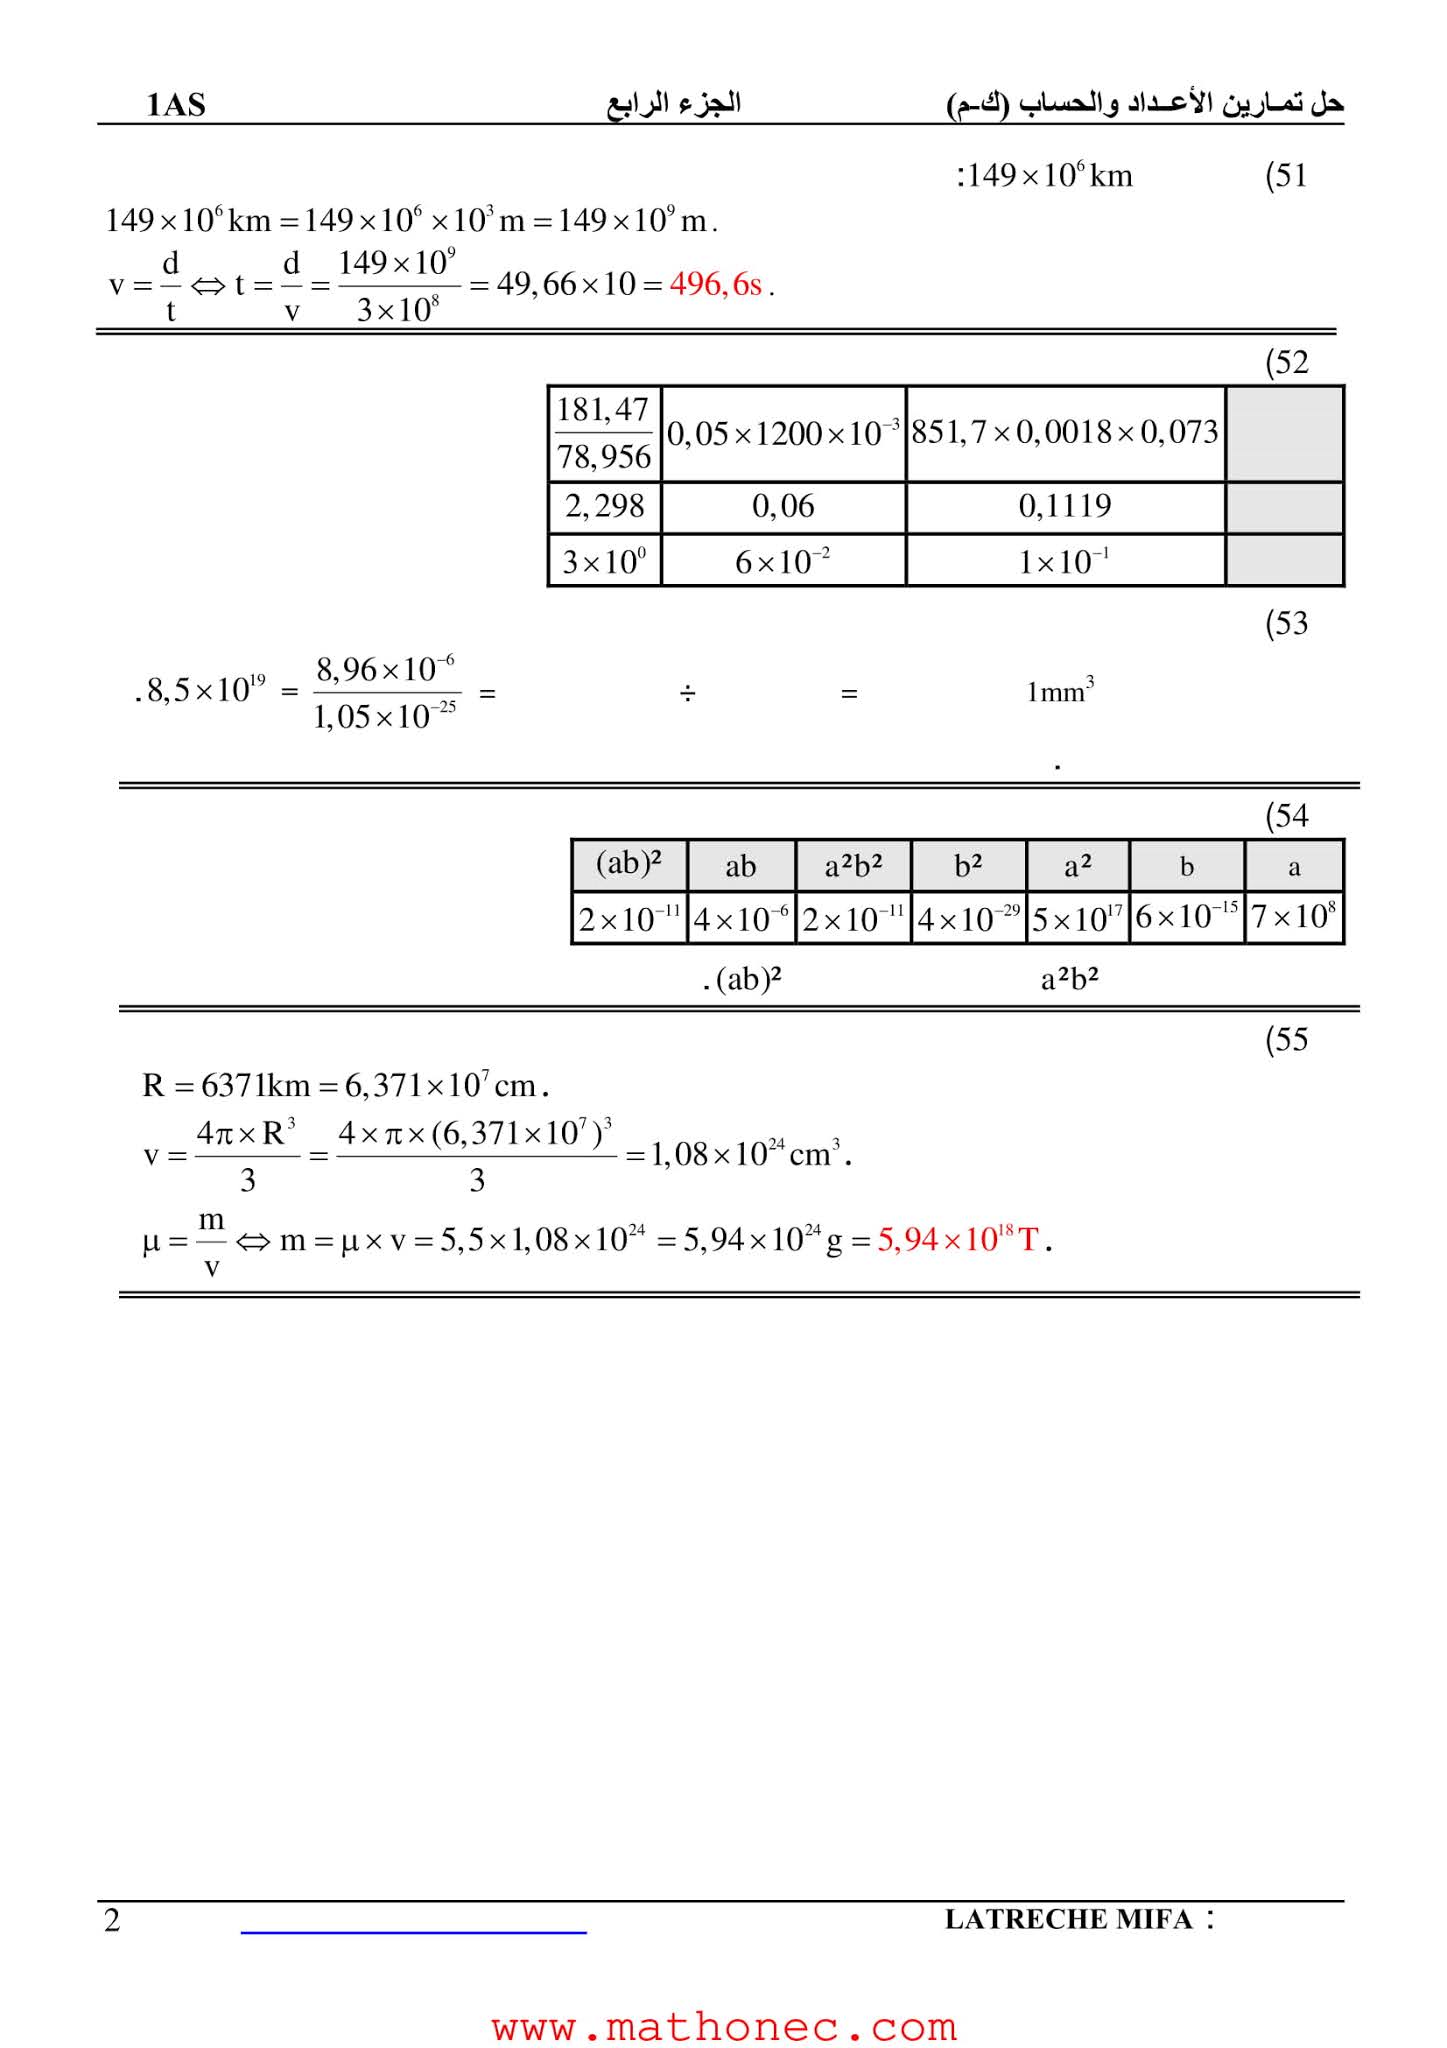 حل تمارين كتاب الرياضيات 1 ثانوي علمي صفحة 21